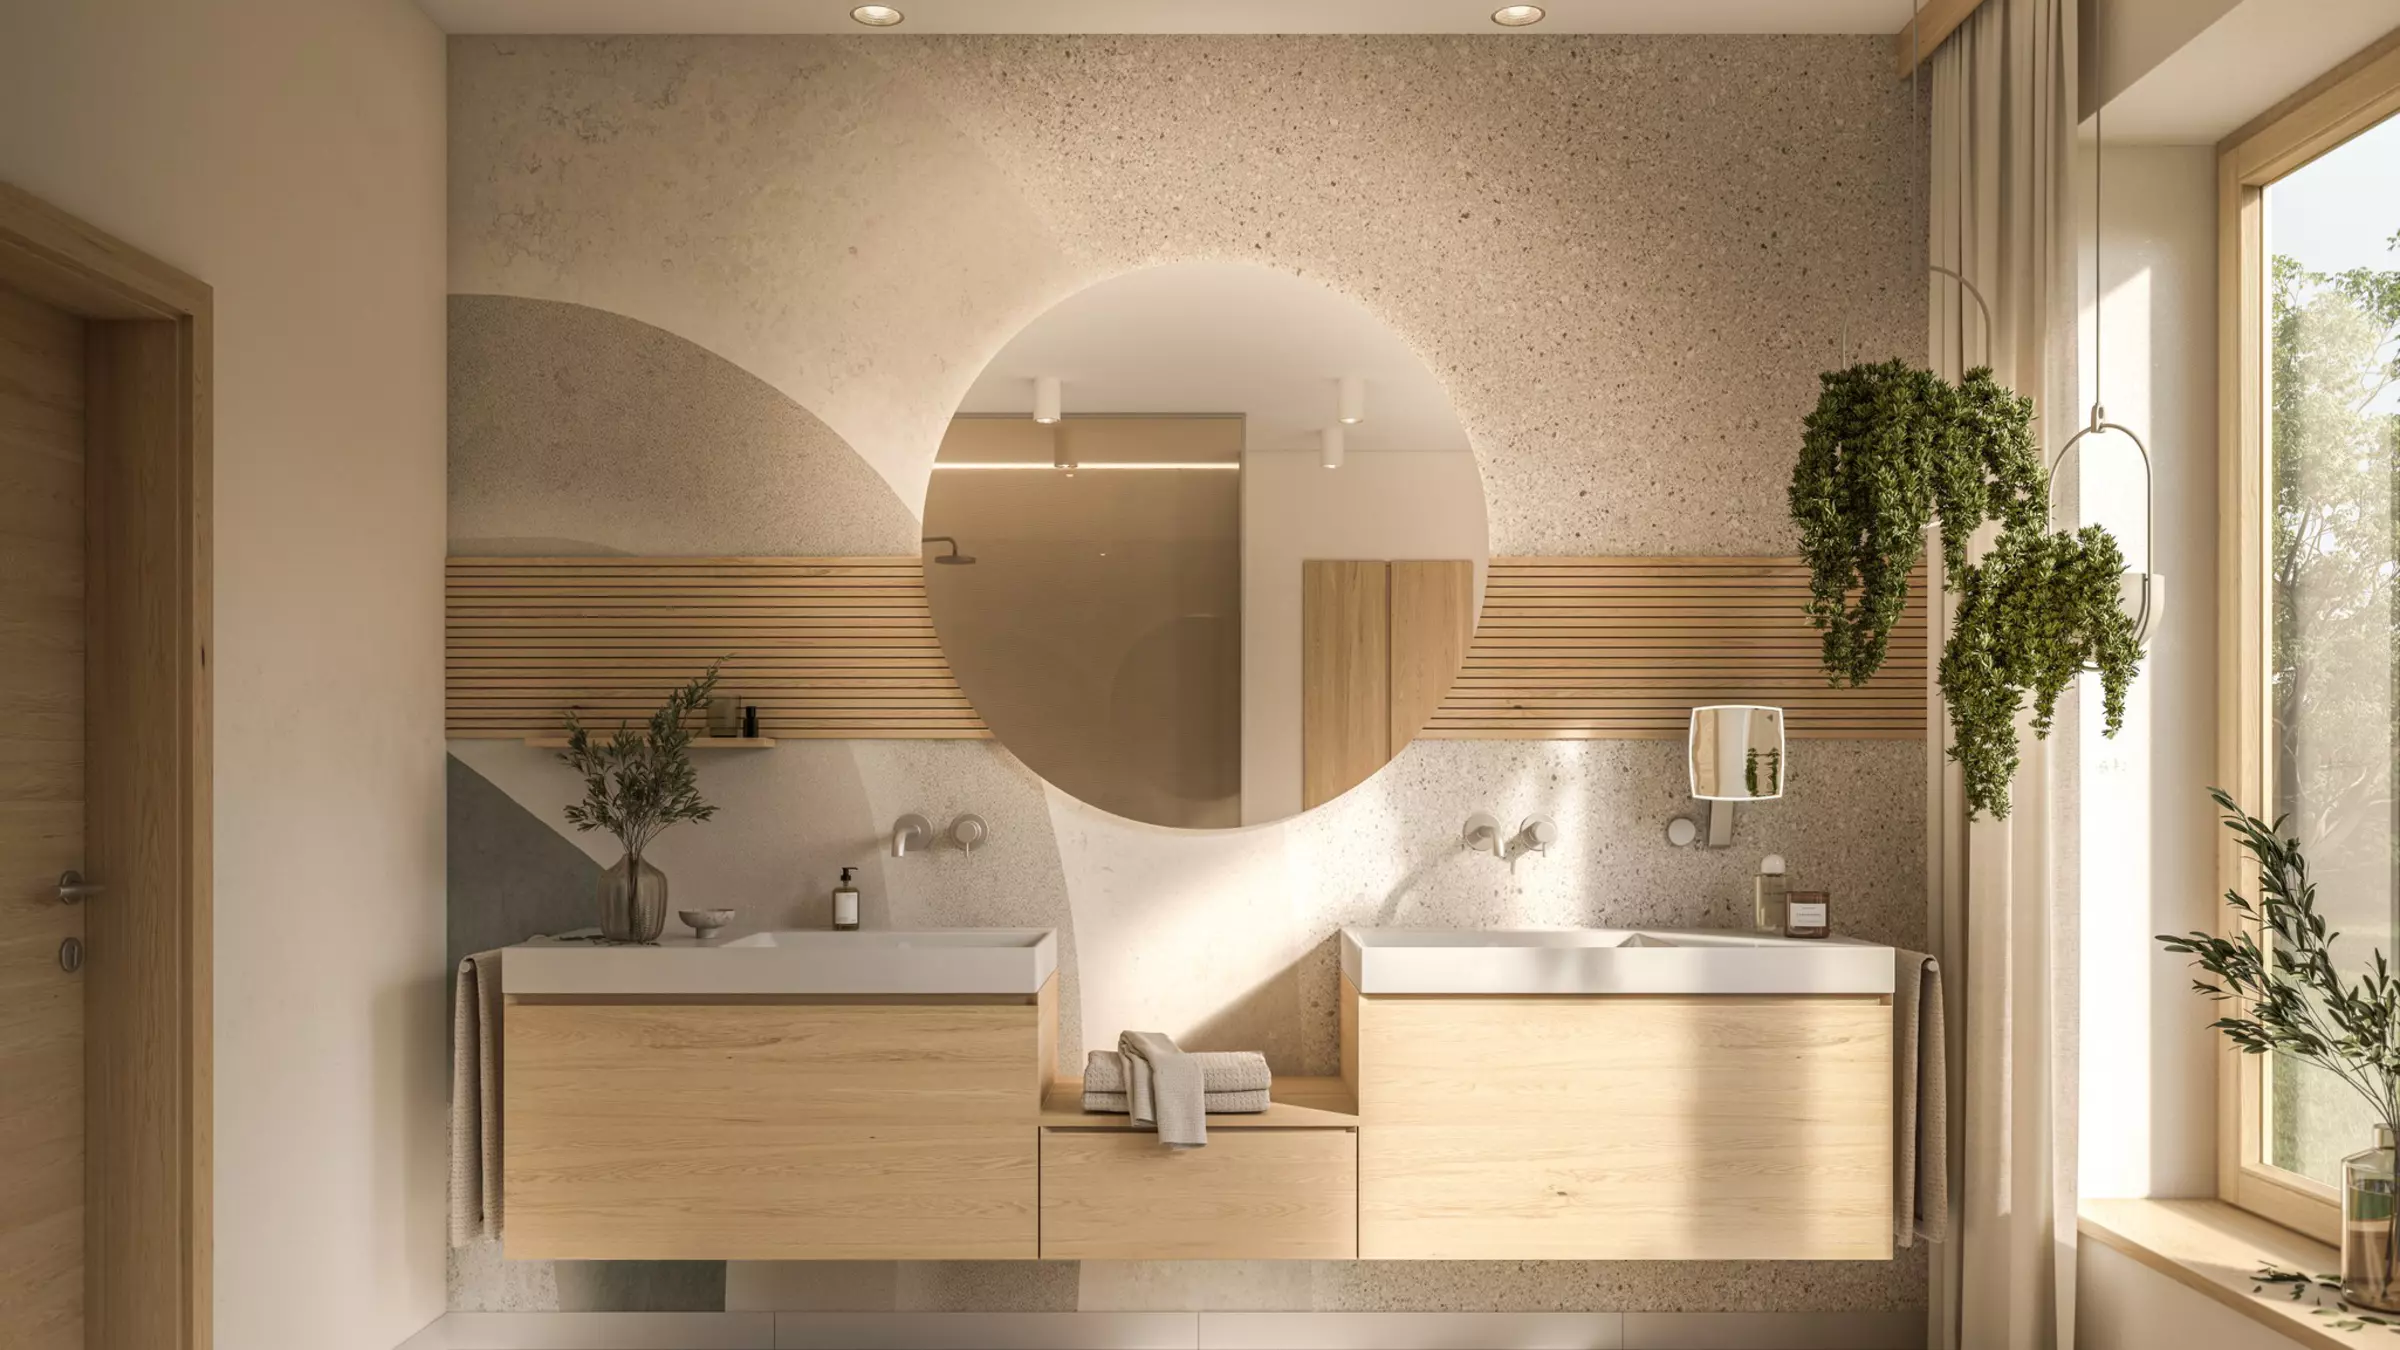 Zwei Waschtische mit rundem Spiegel und Holz-Unterschränken in einem Licht durchfluteten Badezimmer.